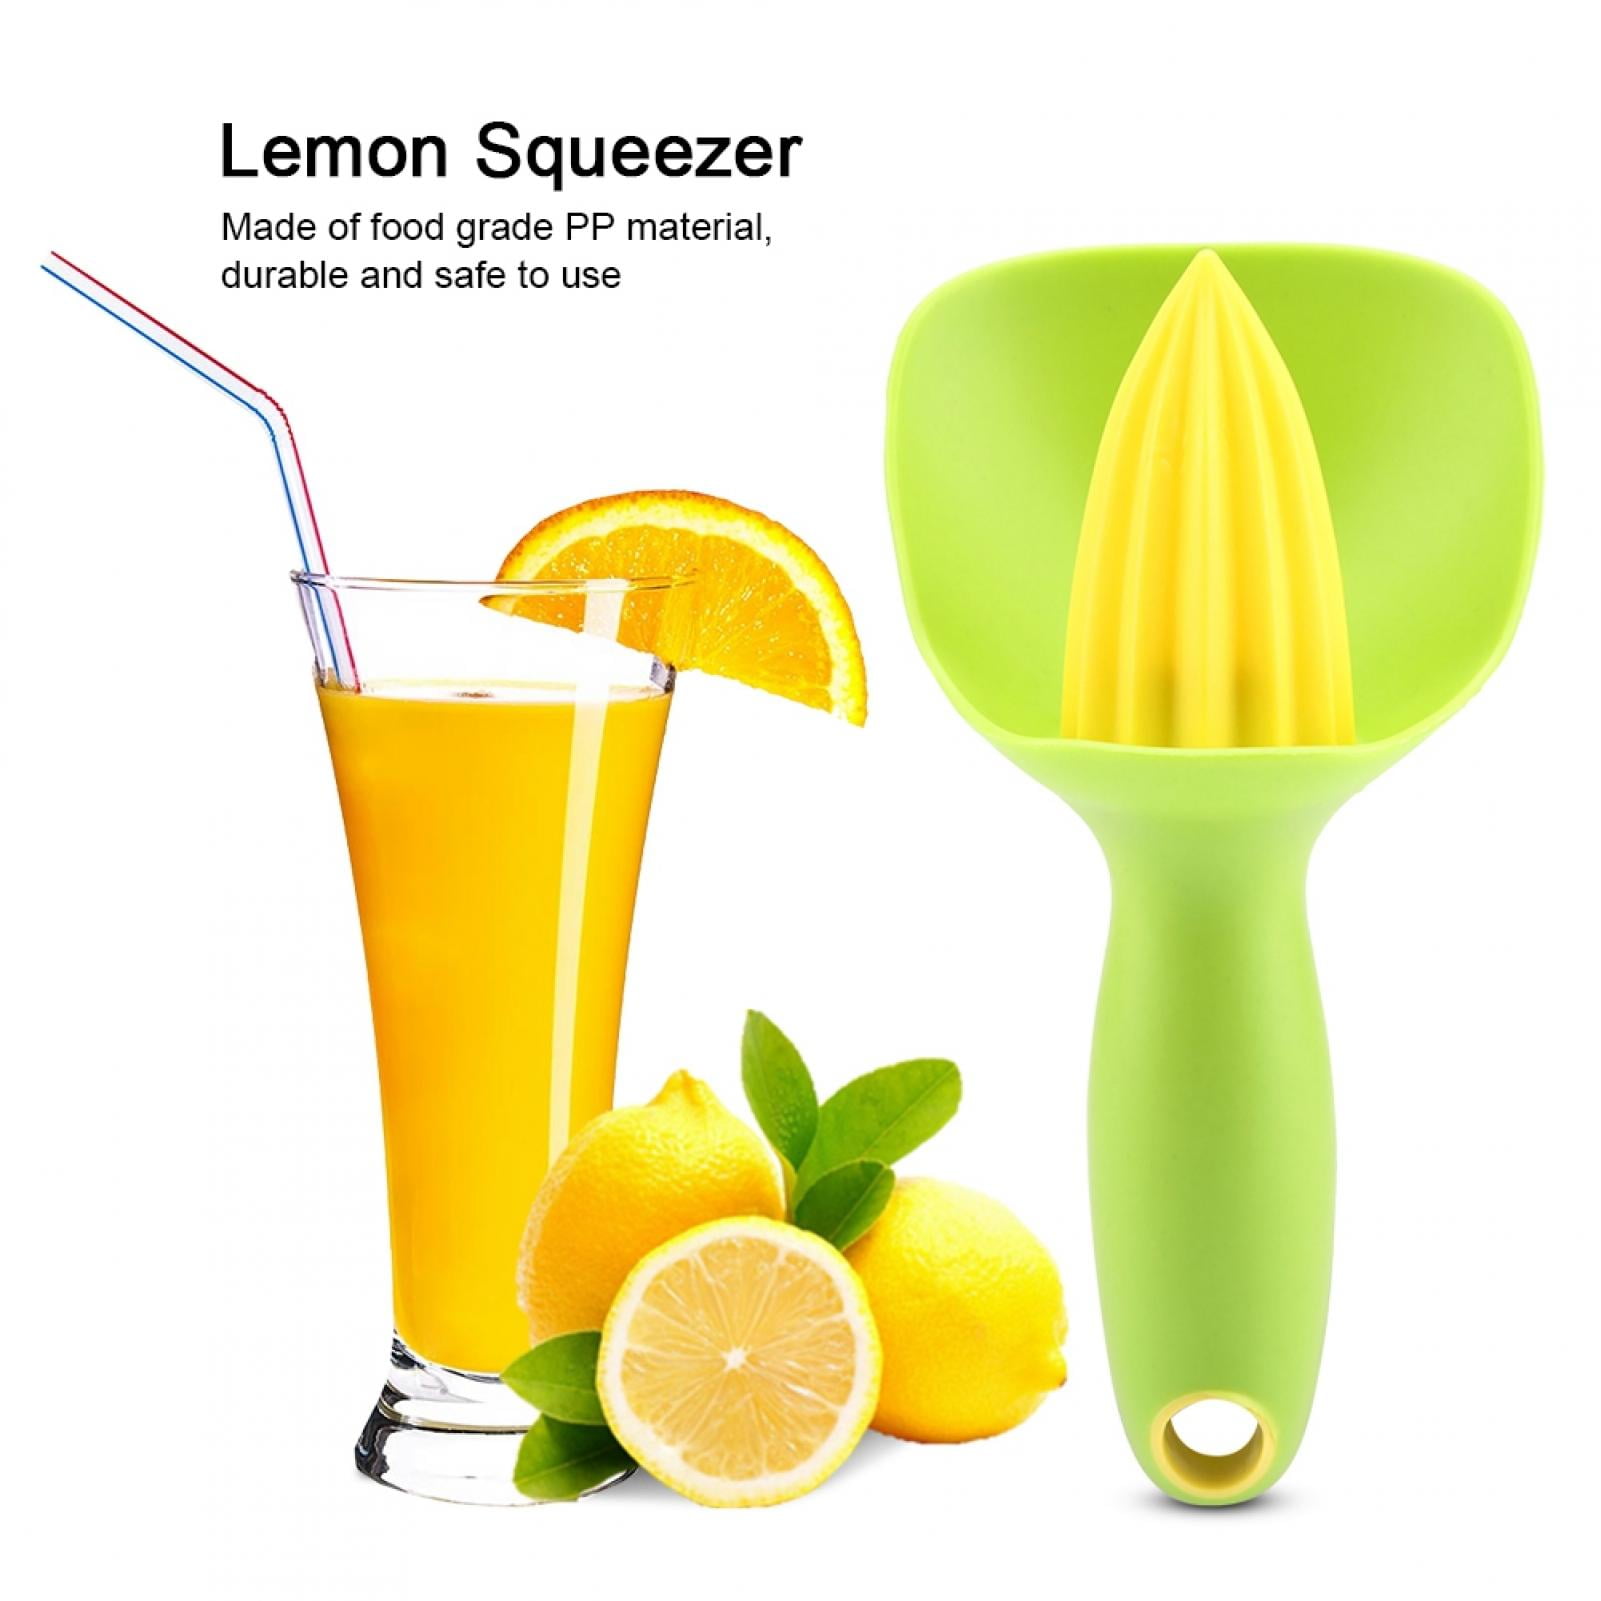 Details about   Commercial Orange Juicer Hand Press fresh Manual Citrus Fruit Lemon Squeezer 